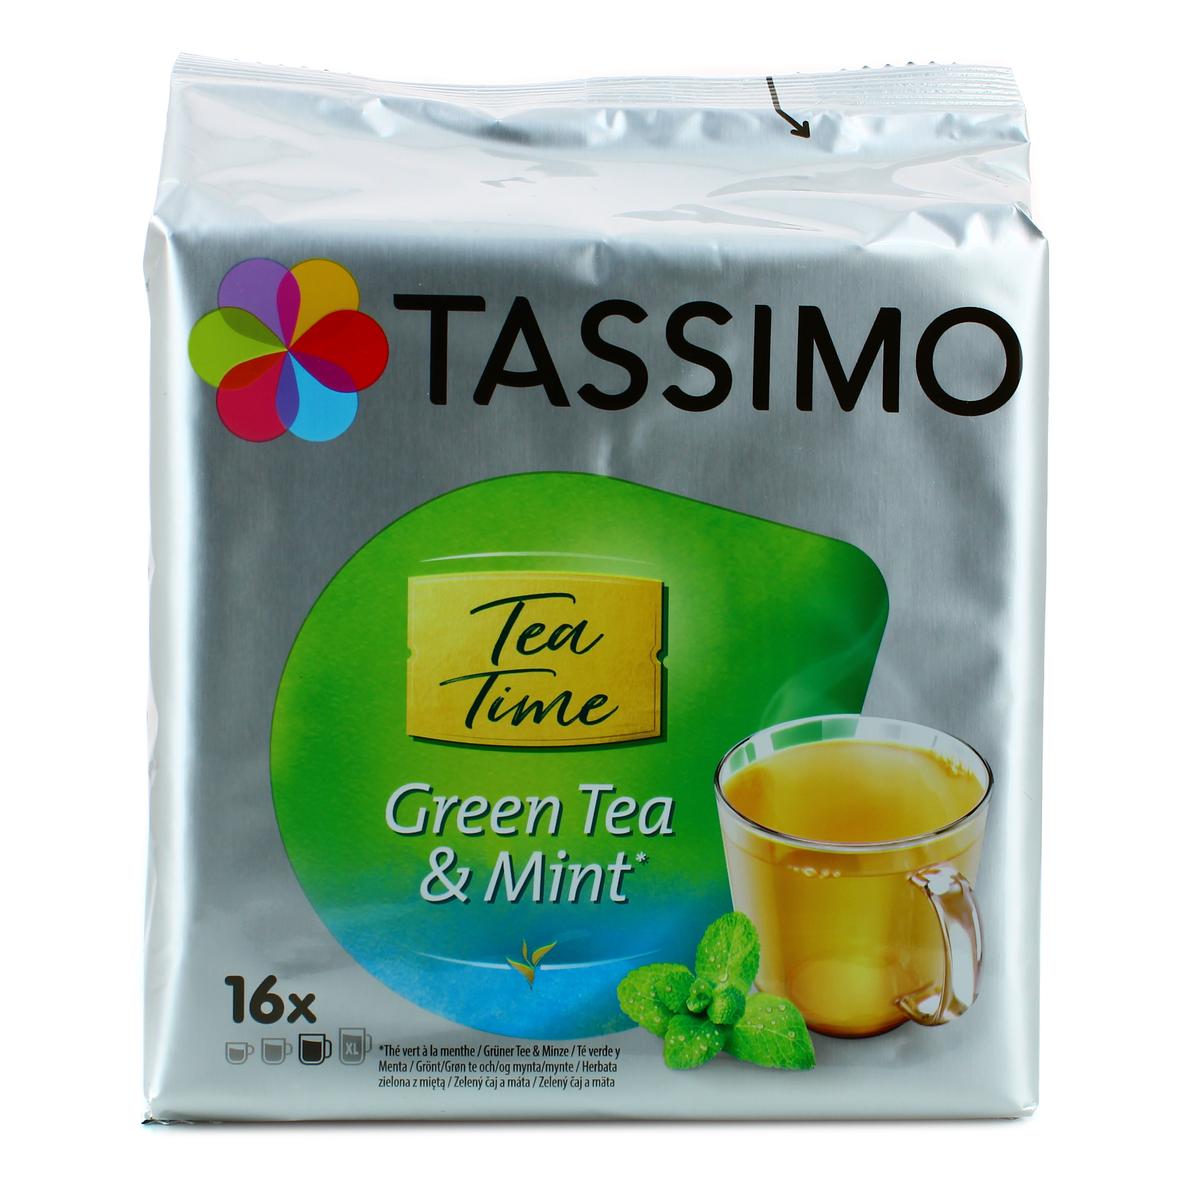 Tassimo - Voici une nouvelle bonne raison de faire une pause ! ☕ Prenez une  dose de fraicheur dans votre journée en dégustant notre tout nouveau thé  vert à la menthe 🍃